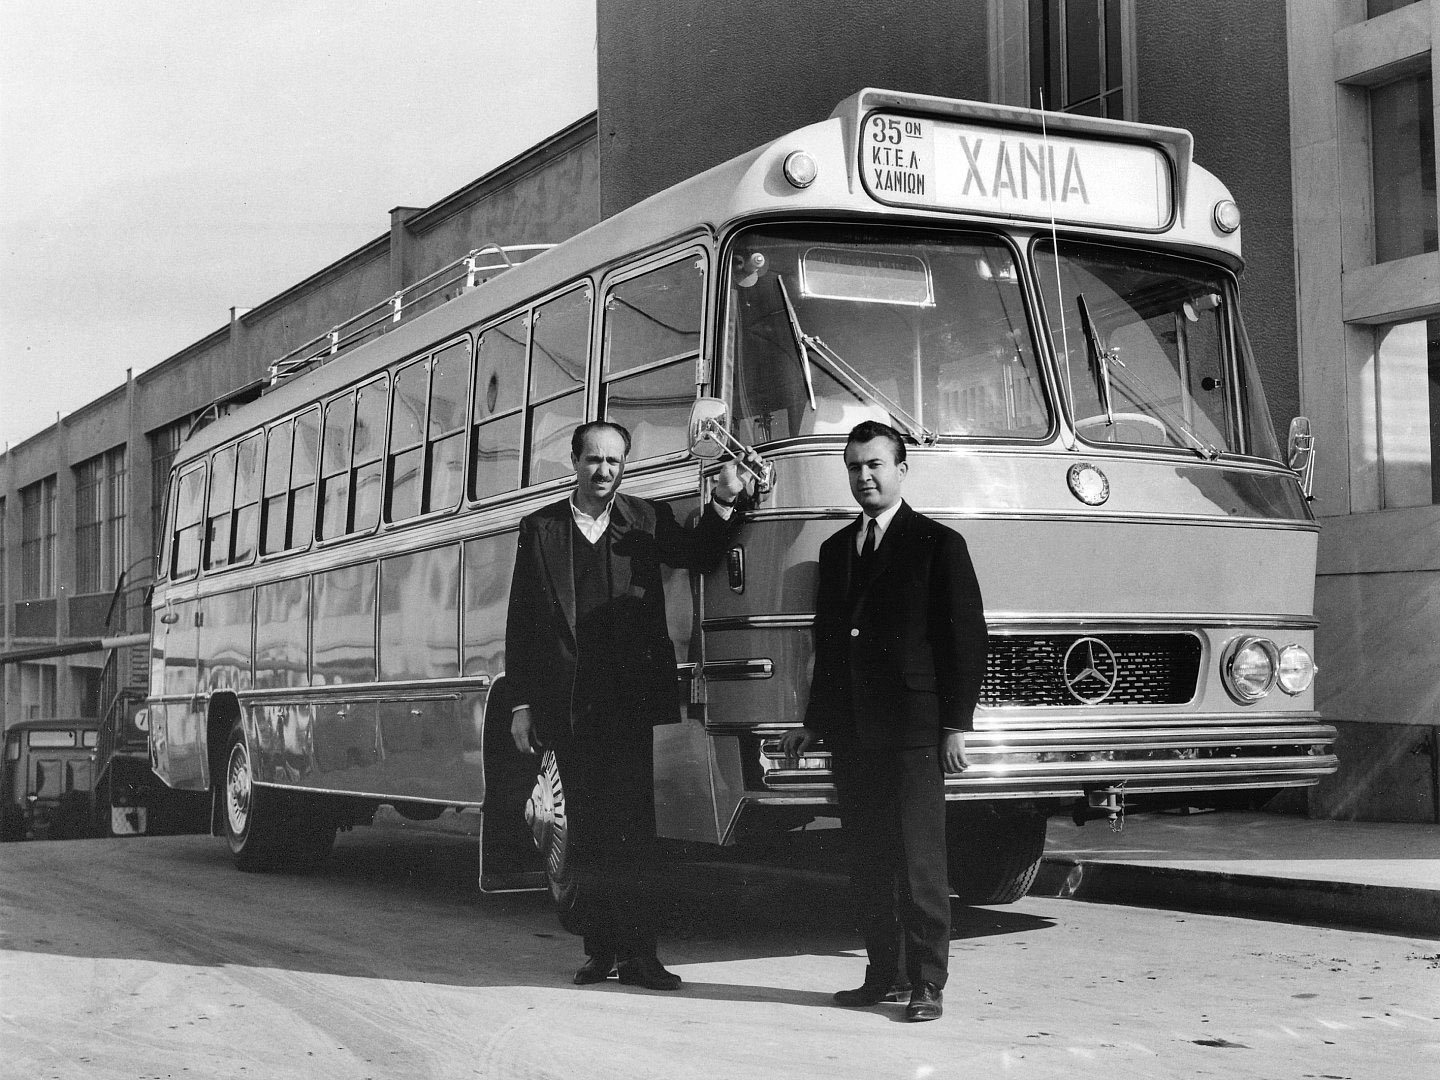 Ταξίδι στον χρόνο: Τα ιστορικά λεωφορεία του ΚΤΕΛ Χανίων-Ρεθύμνης (φωτο)